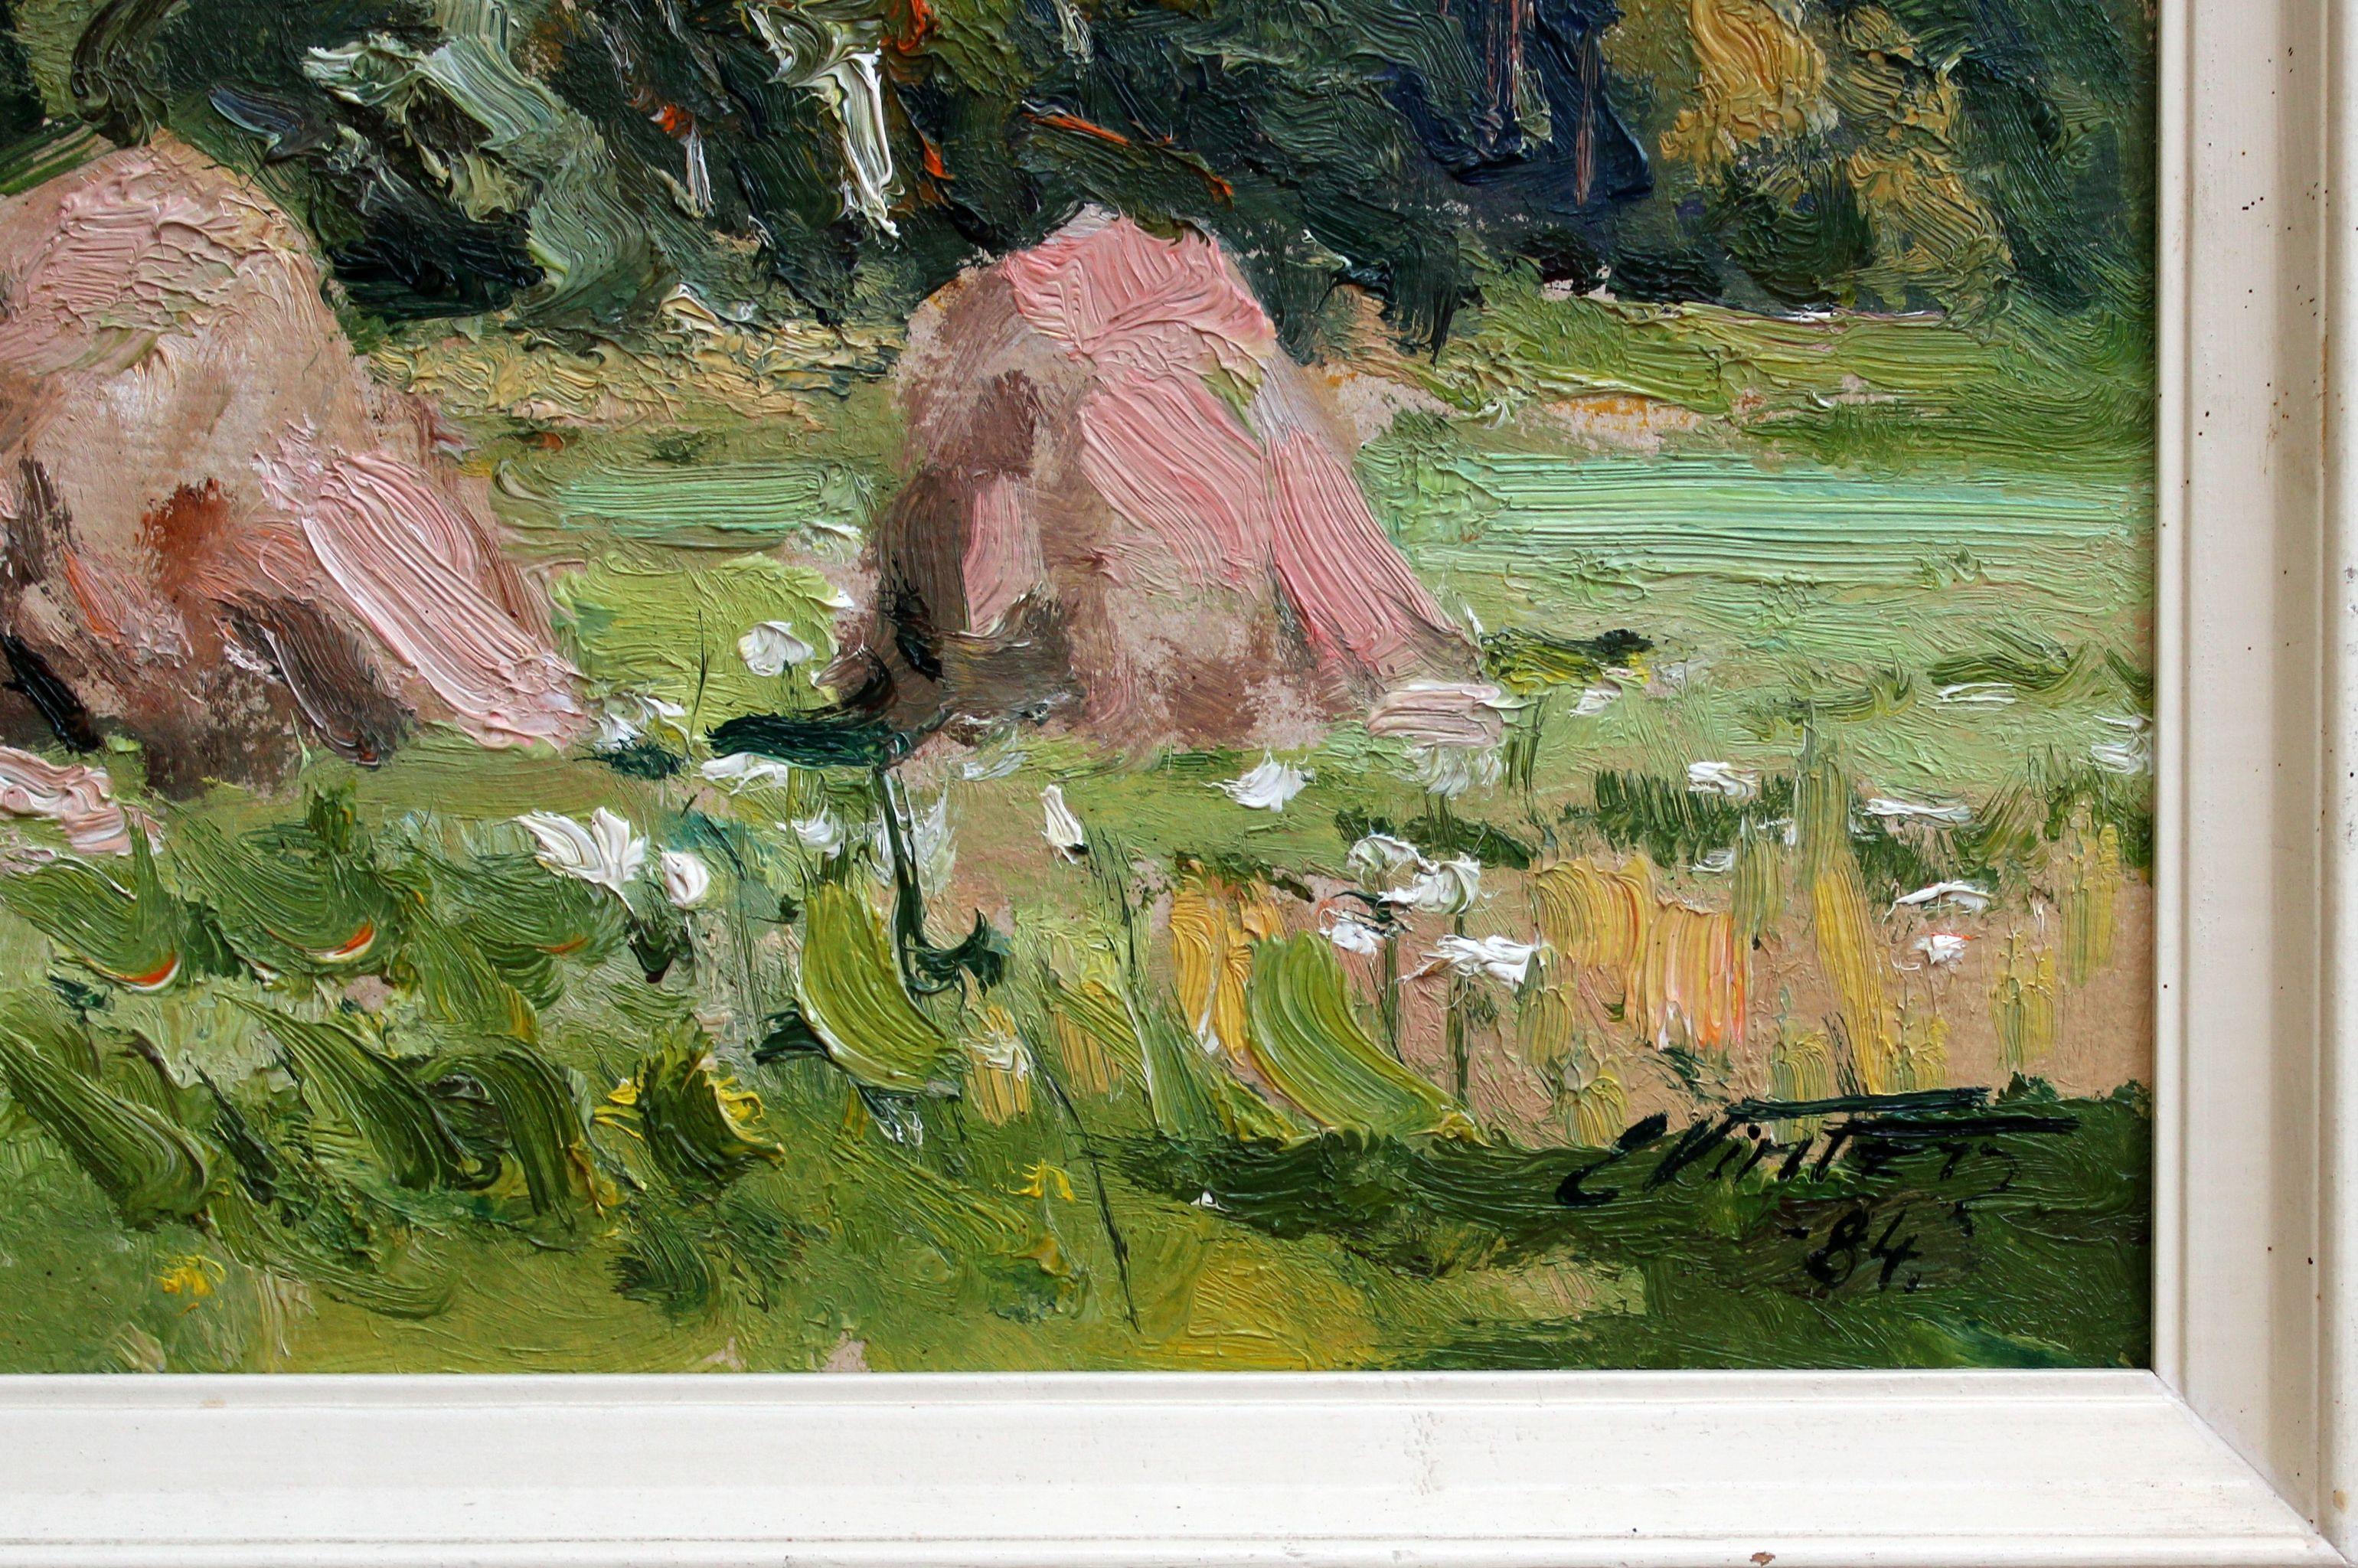 Haystacks. 1984, cardboard, oil, 40x49.5 cm - Painting by Edgars Vinters